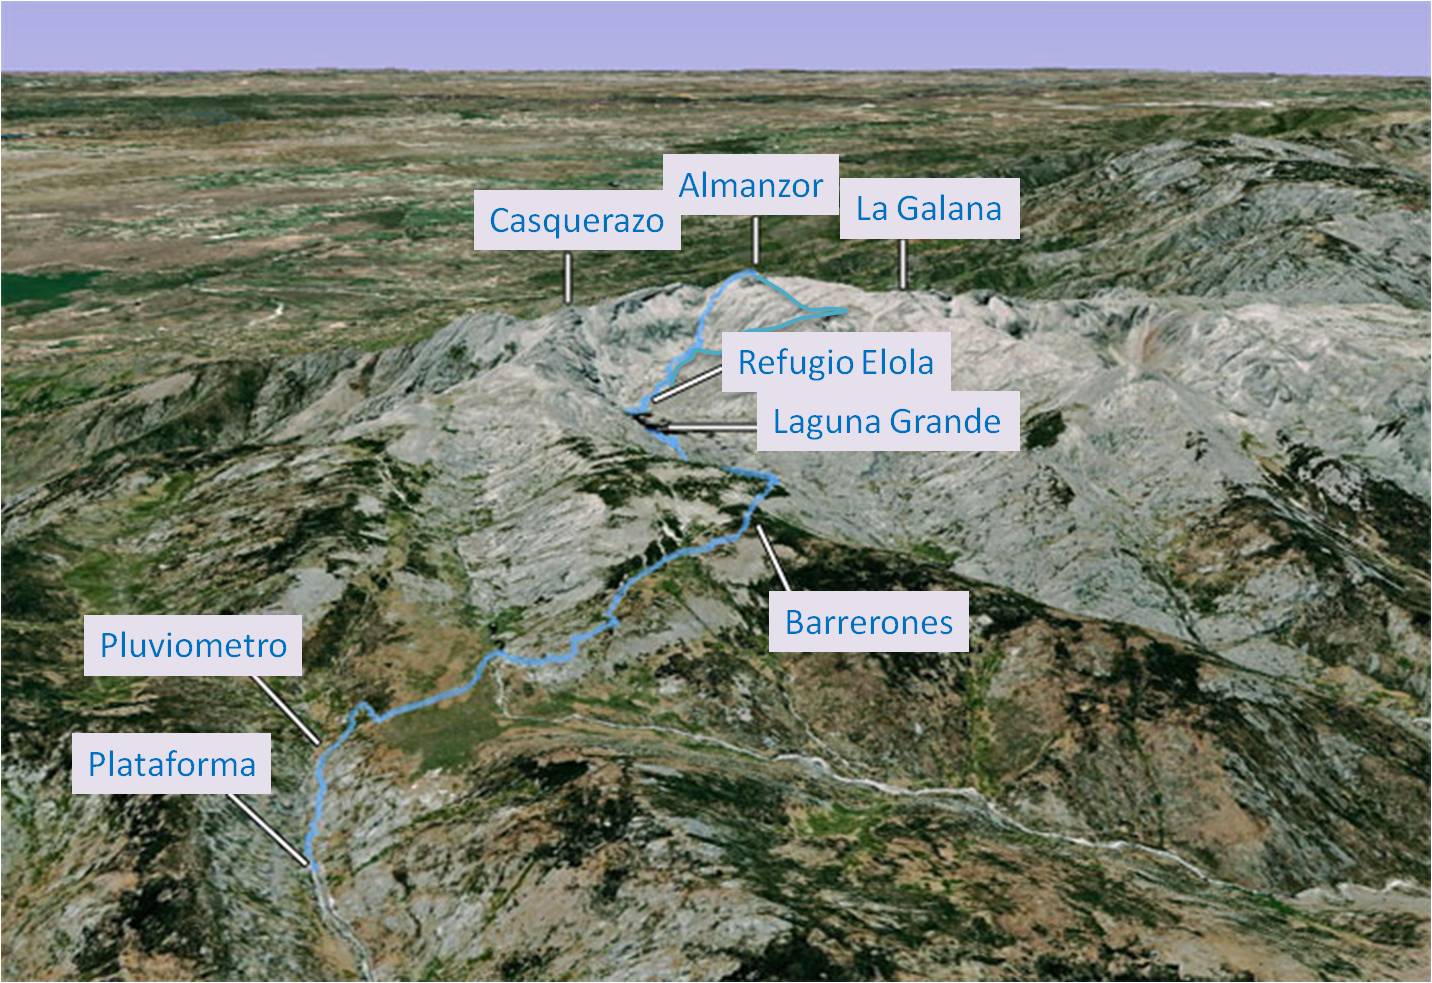 Almanzor, Castilla y León, senderismo, rutas, Alta montaña